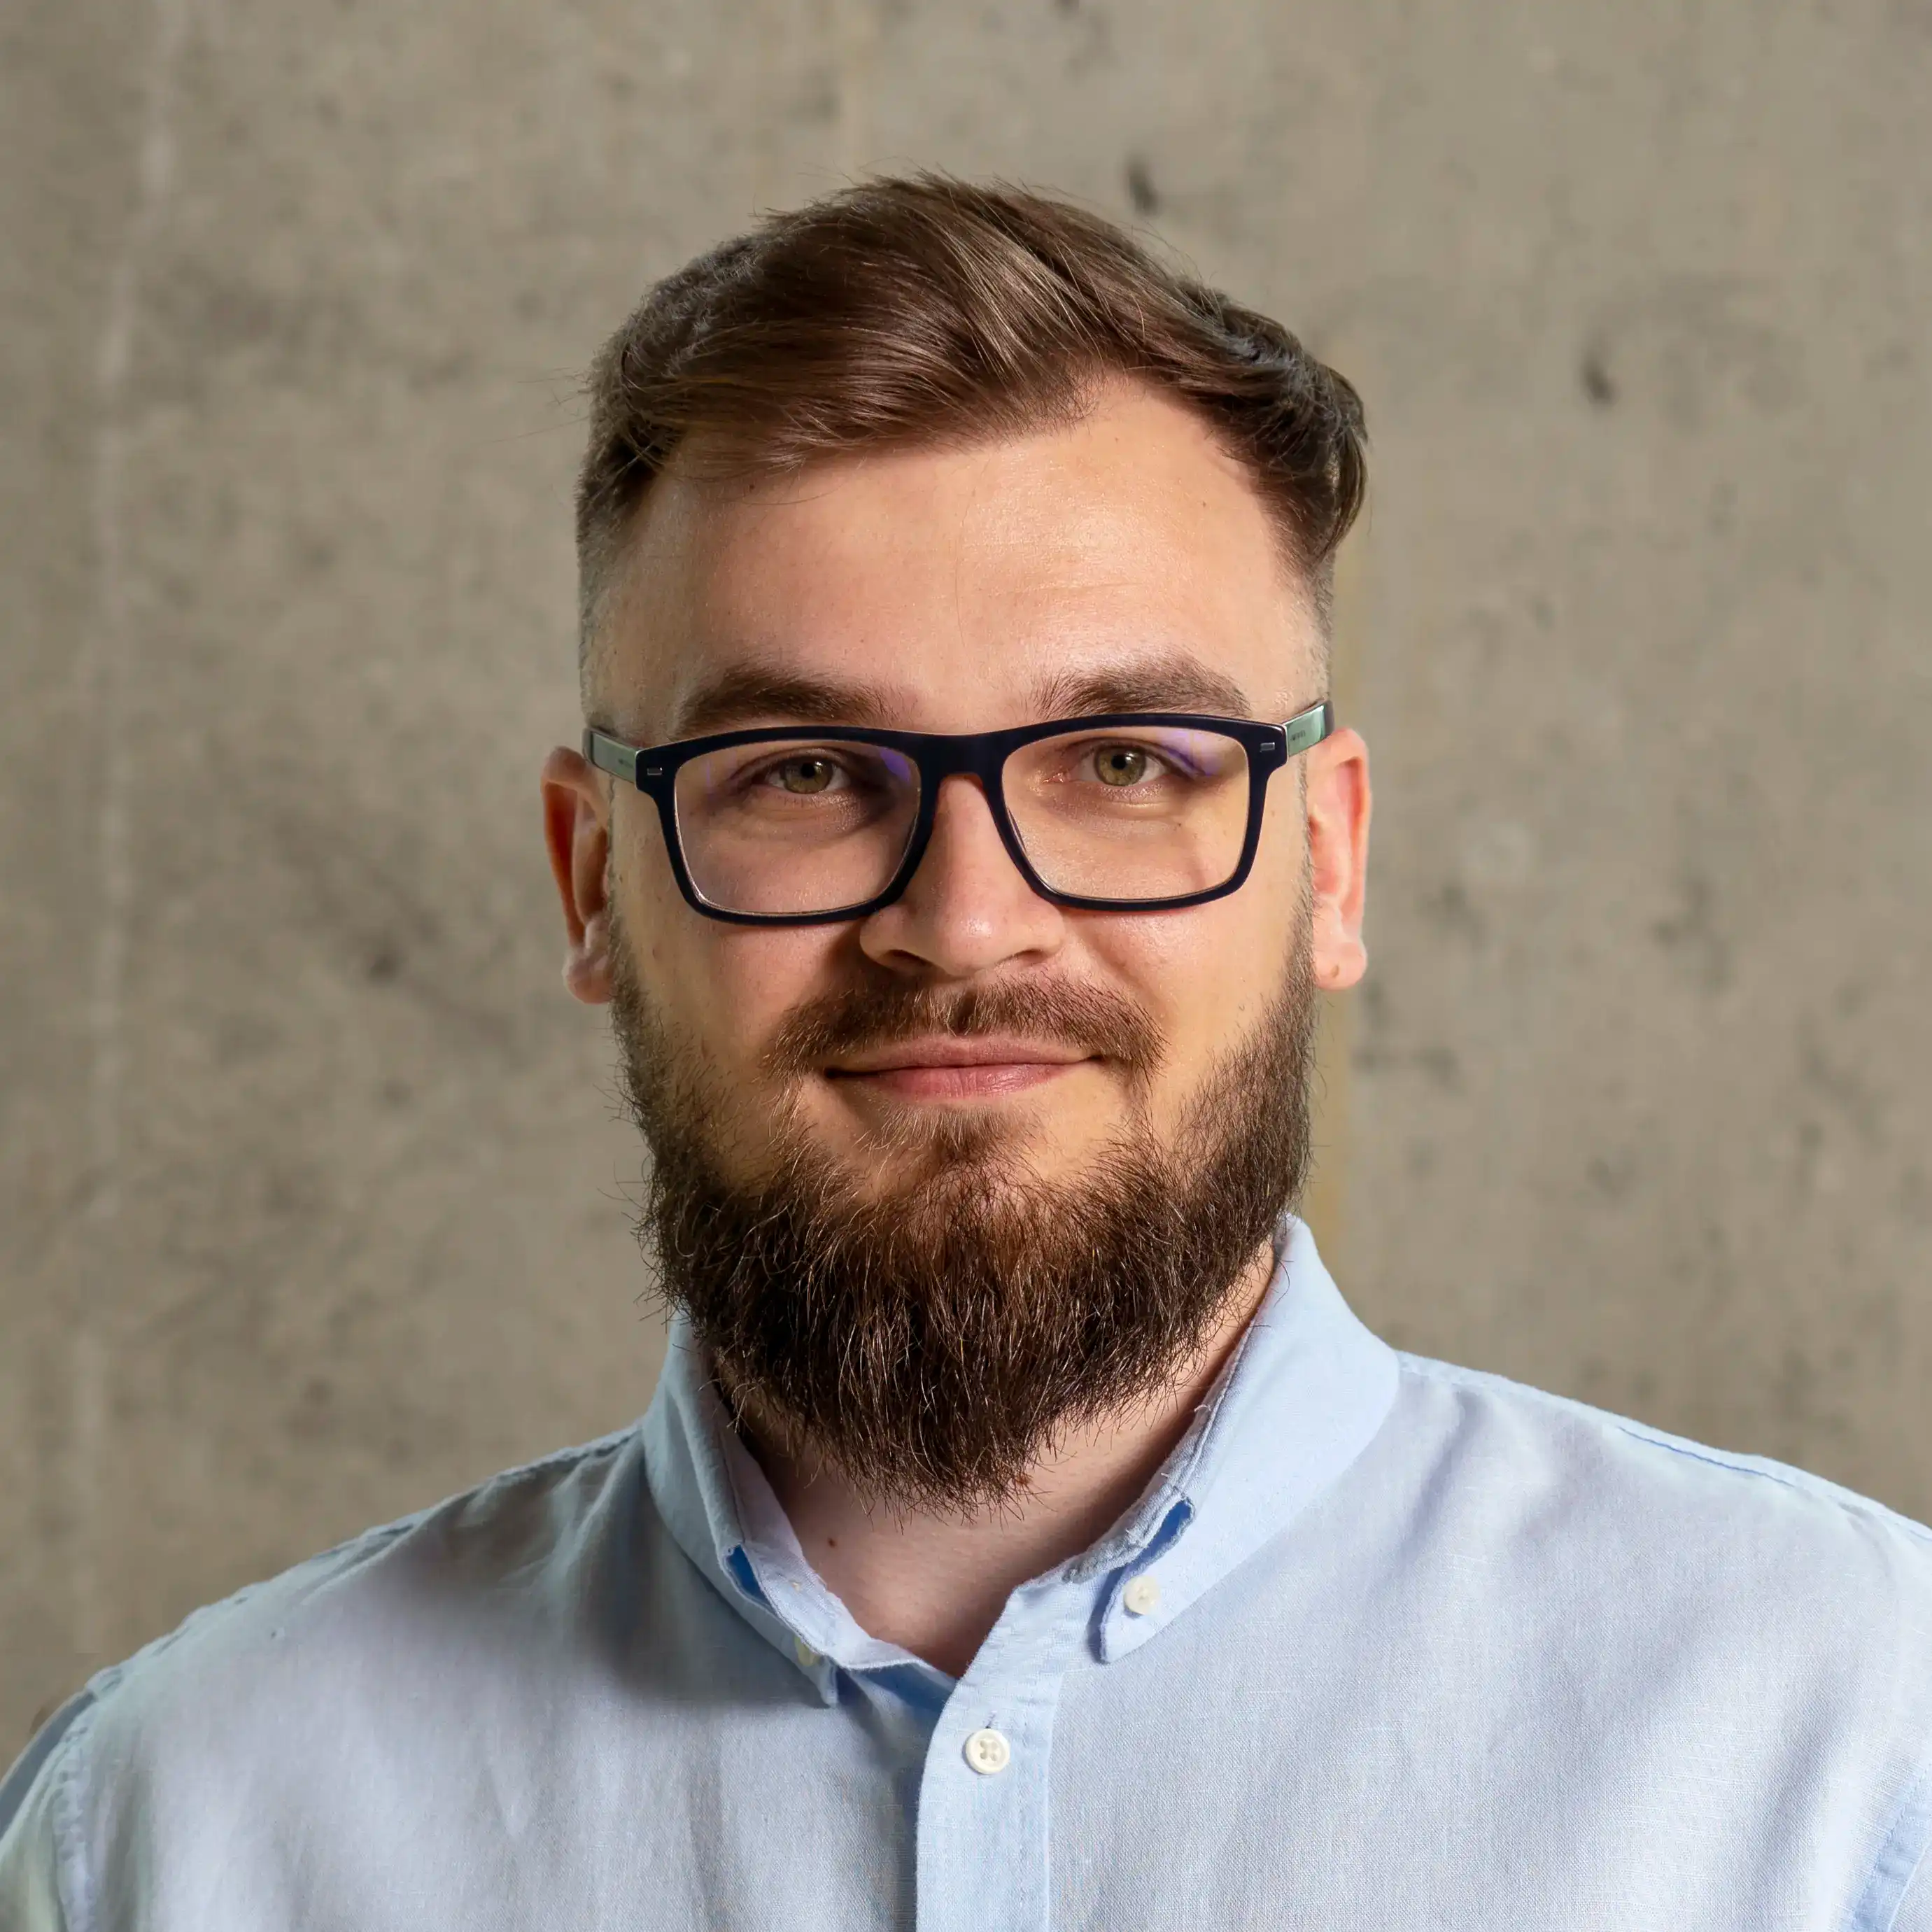 Paweł Sobkowski - Modino Software Engineer profile image